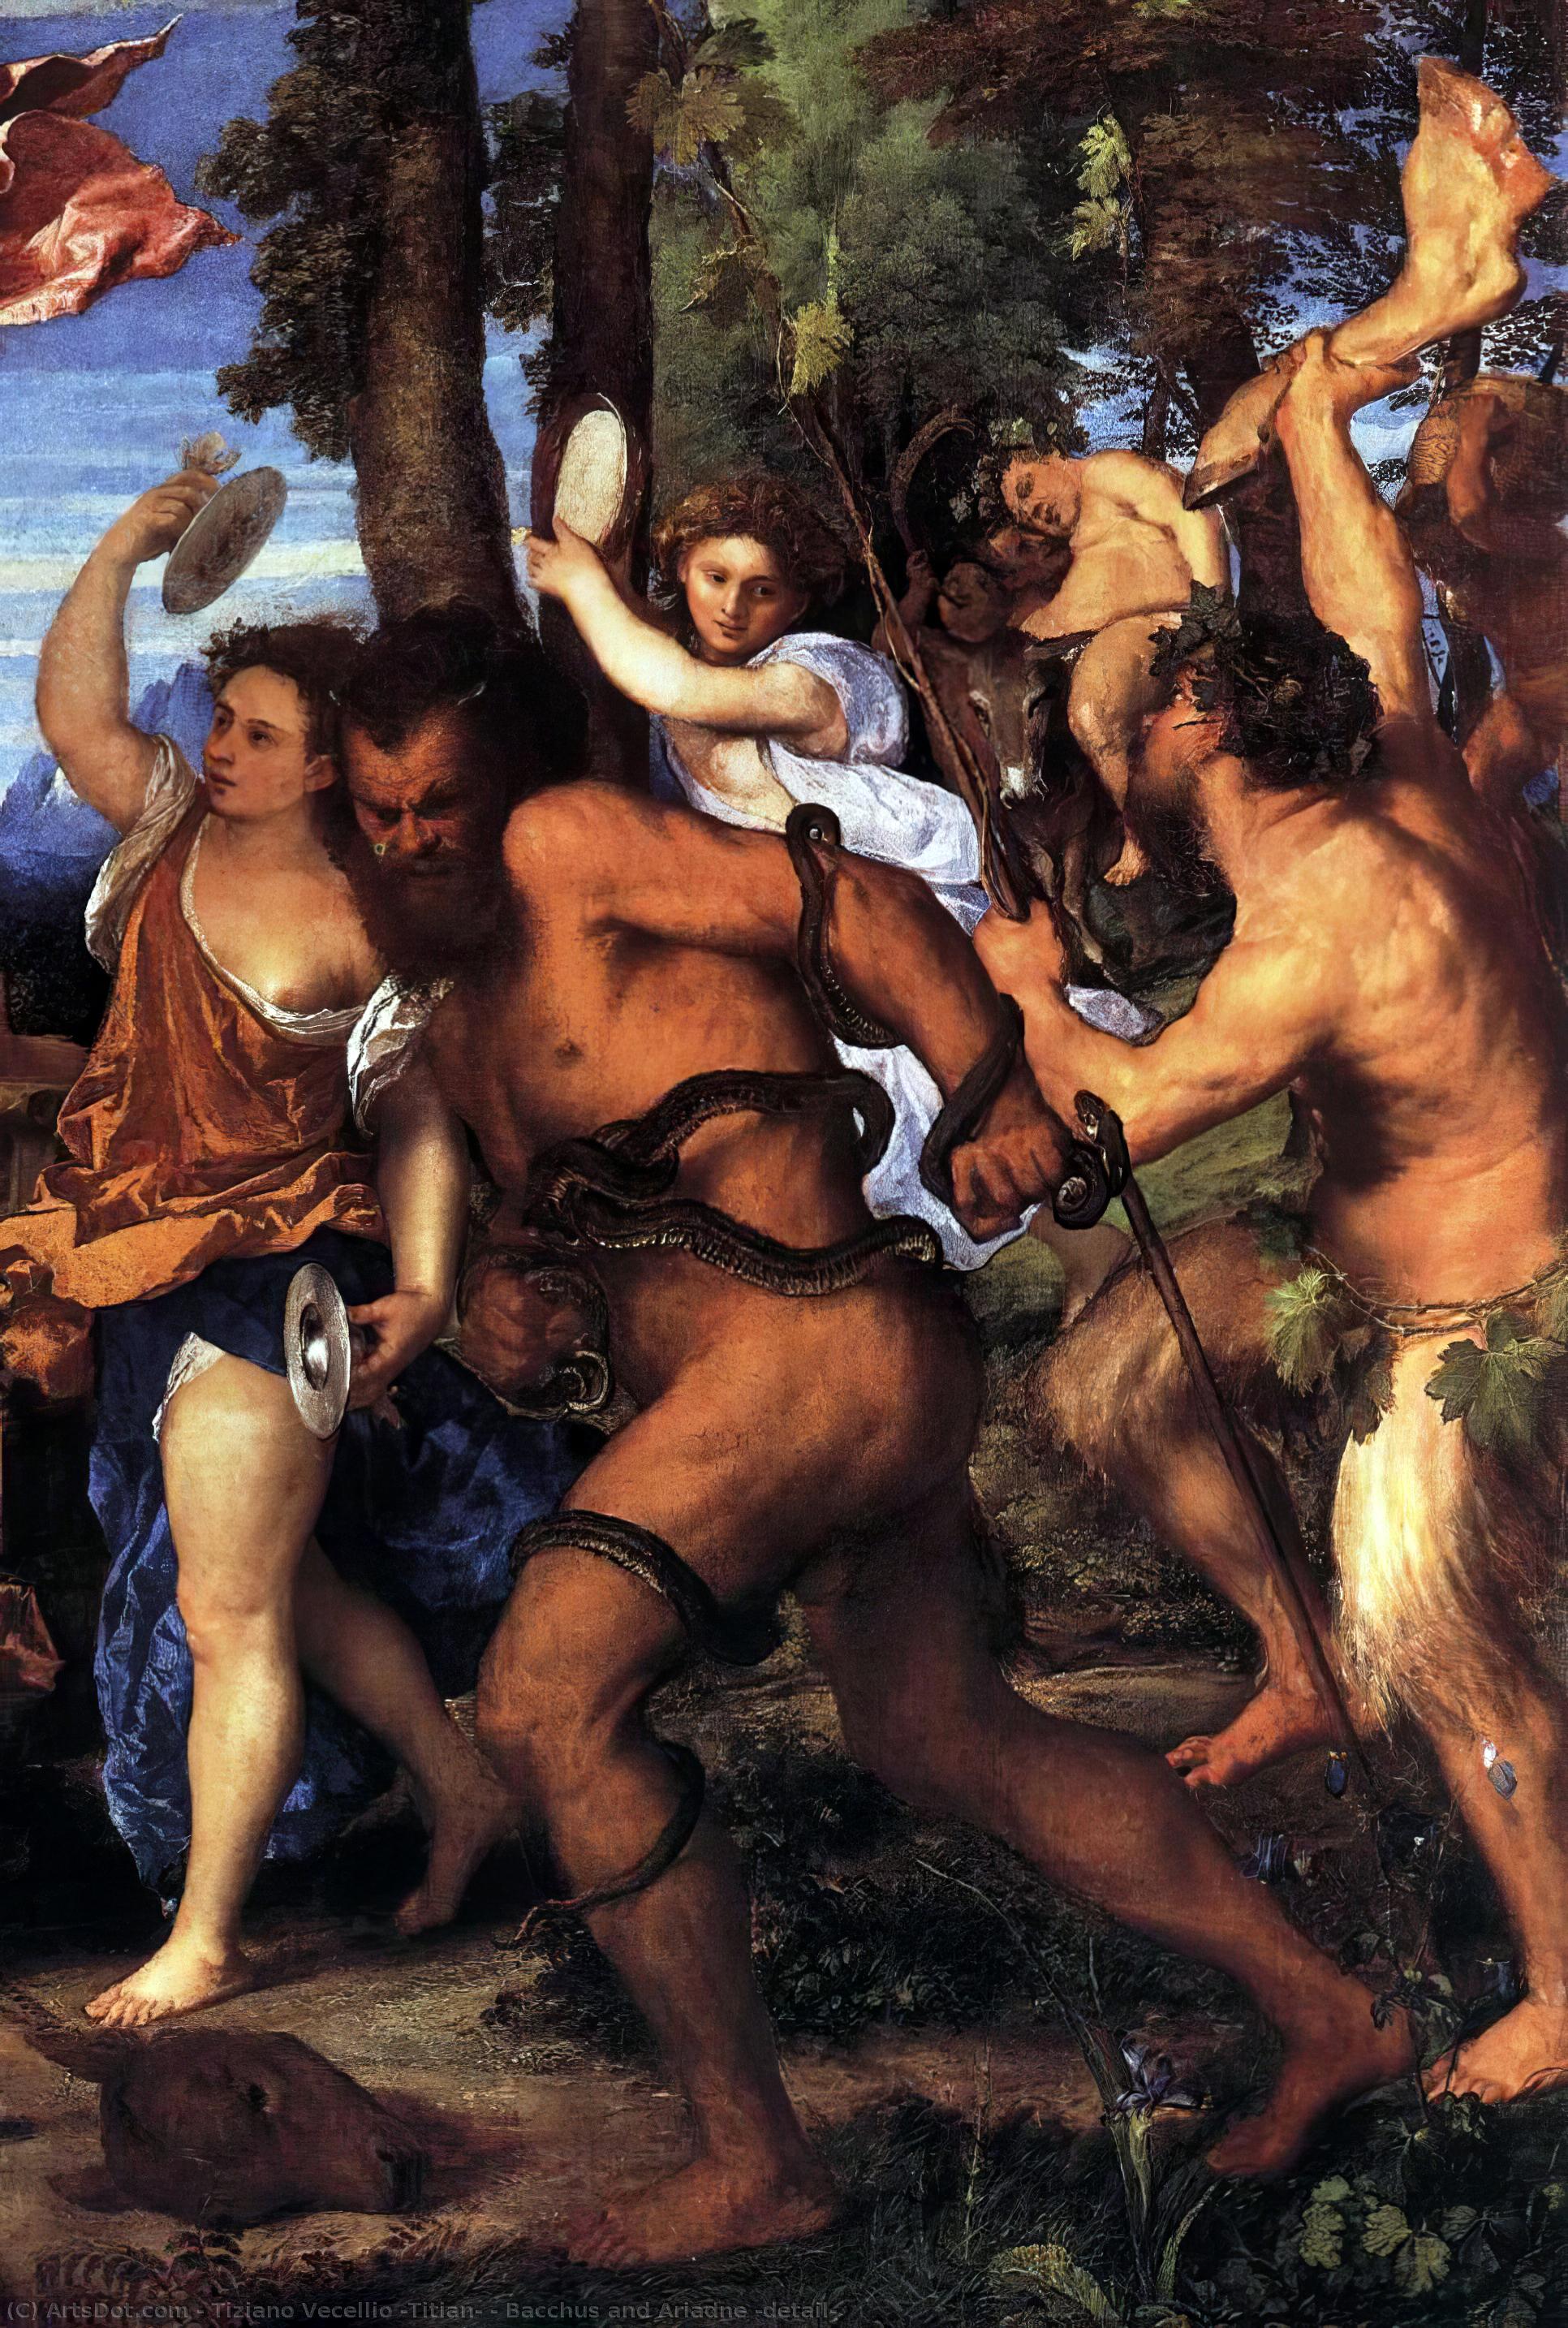 WikiOO.org - Encyclopedia of Fine Arts - Maleri, Artwork Tiziano Vecellio (Titian) - Bacchus and Ariadne (detail)